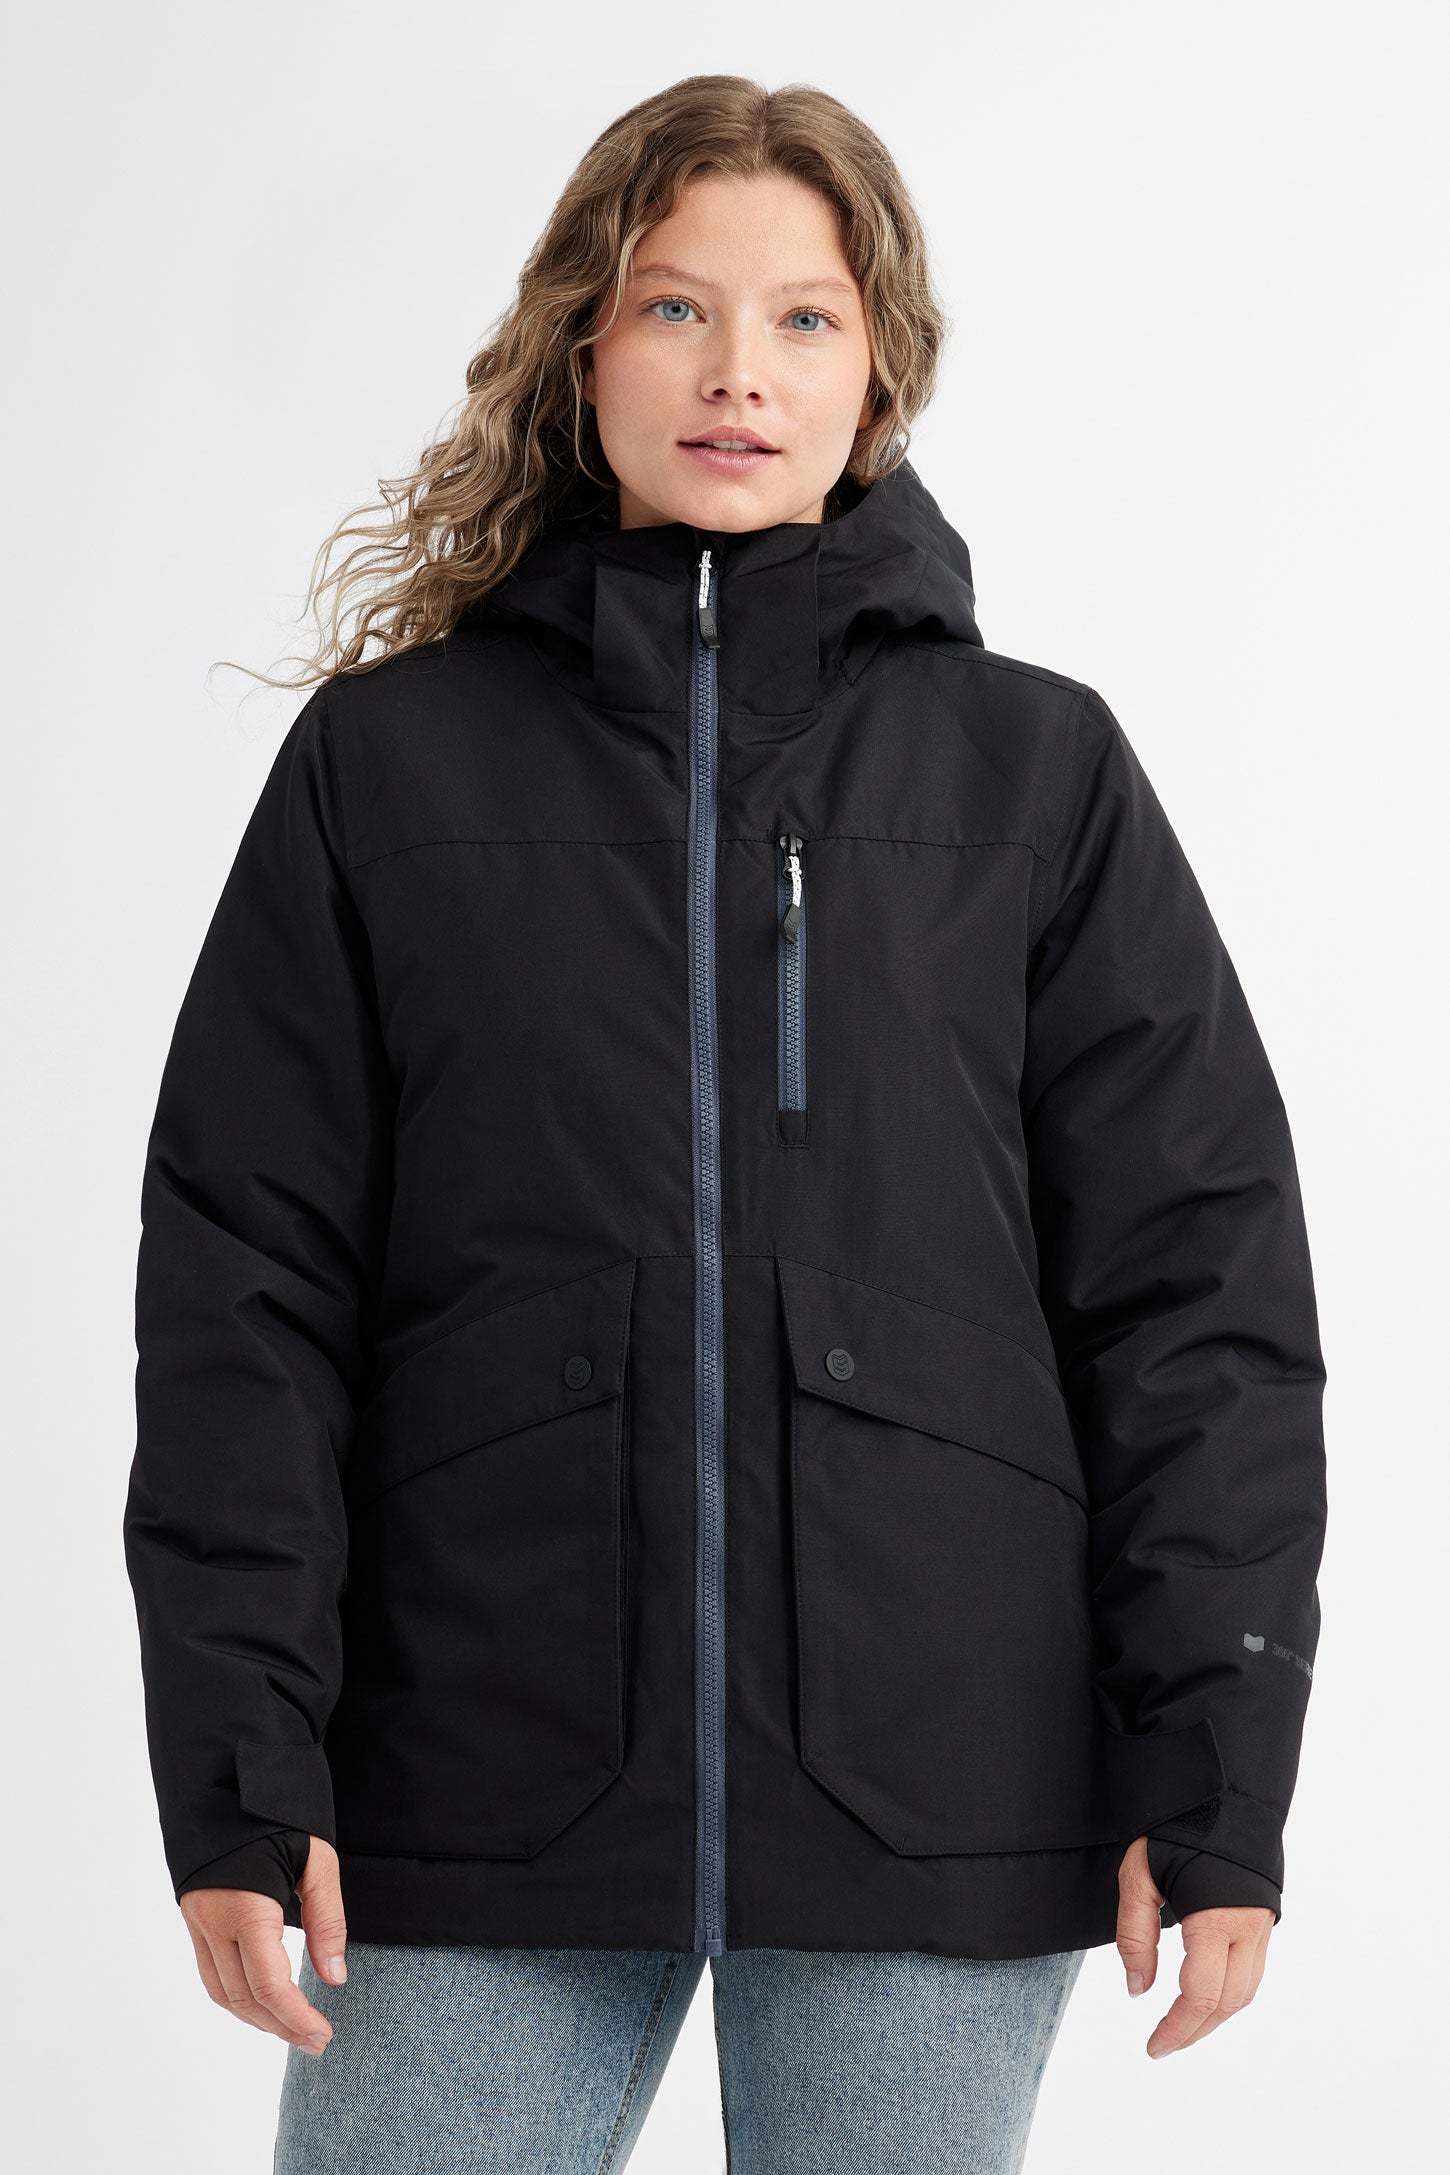 Manteau de ski hiver - Femme && NOIR